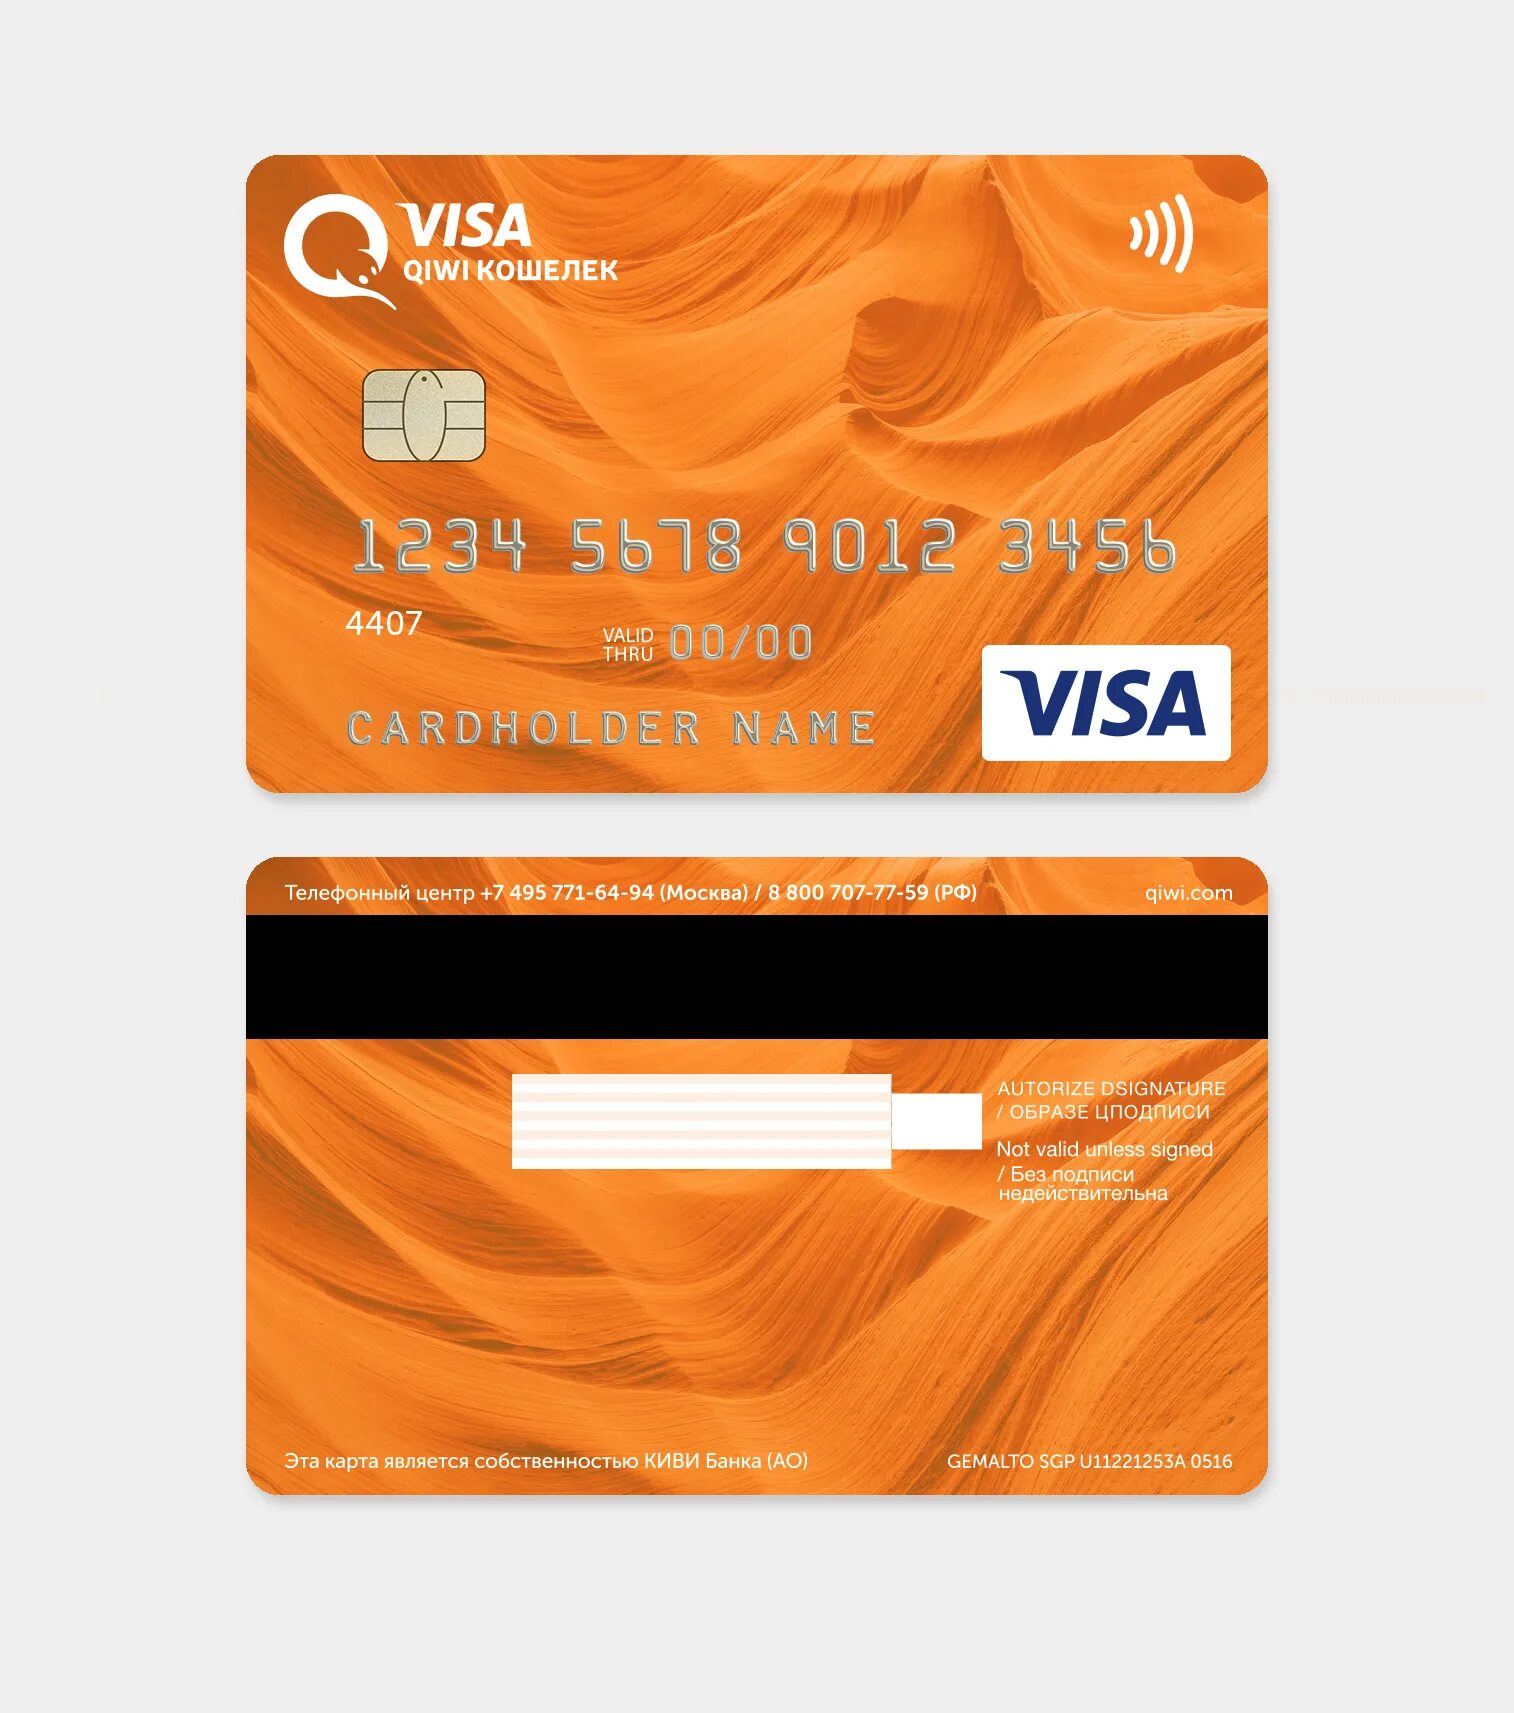 Киви кошелек это какой банк. Банковская карта киви. Карта киви виза. QIWI карта пластиковая. Кредитная карта.